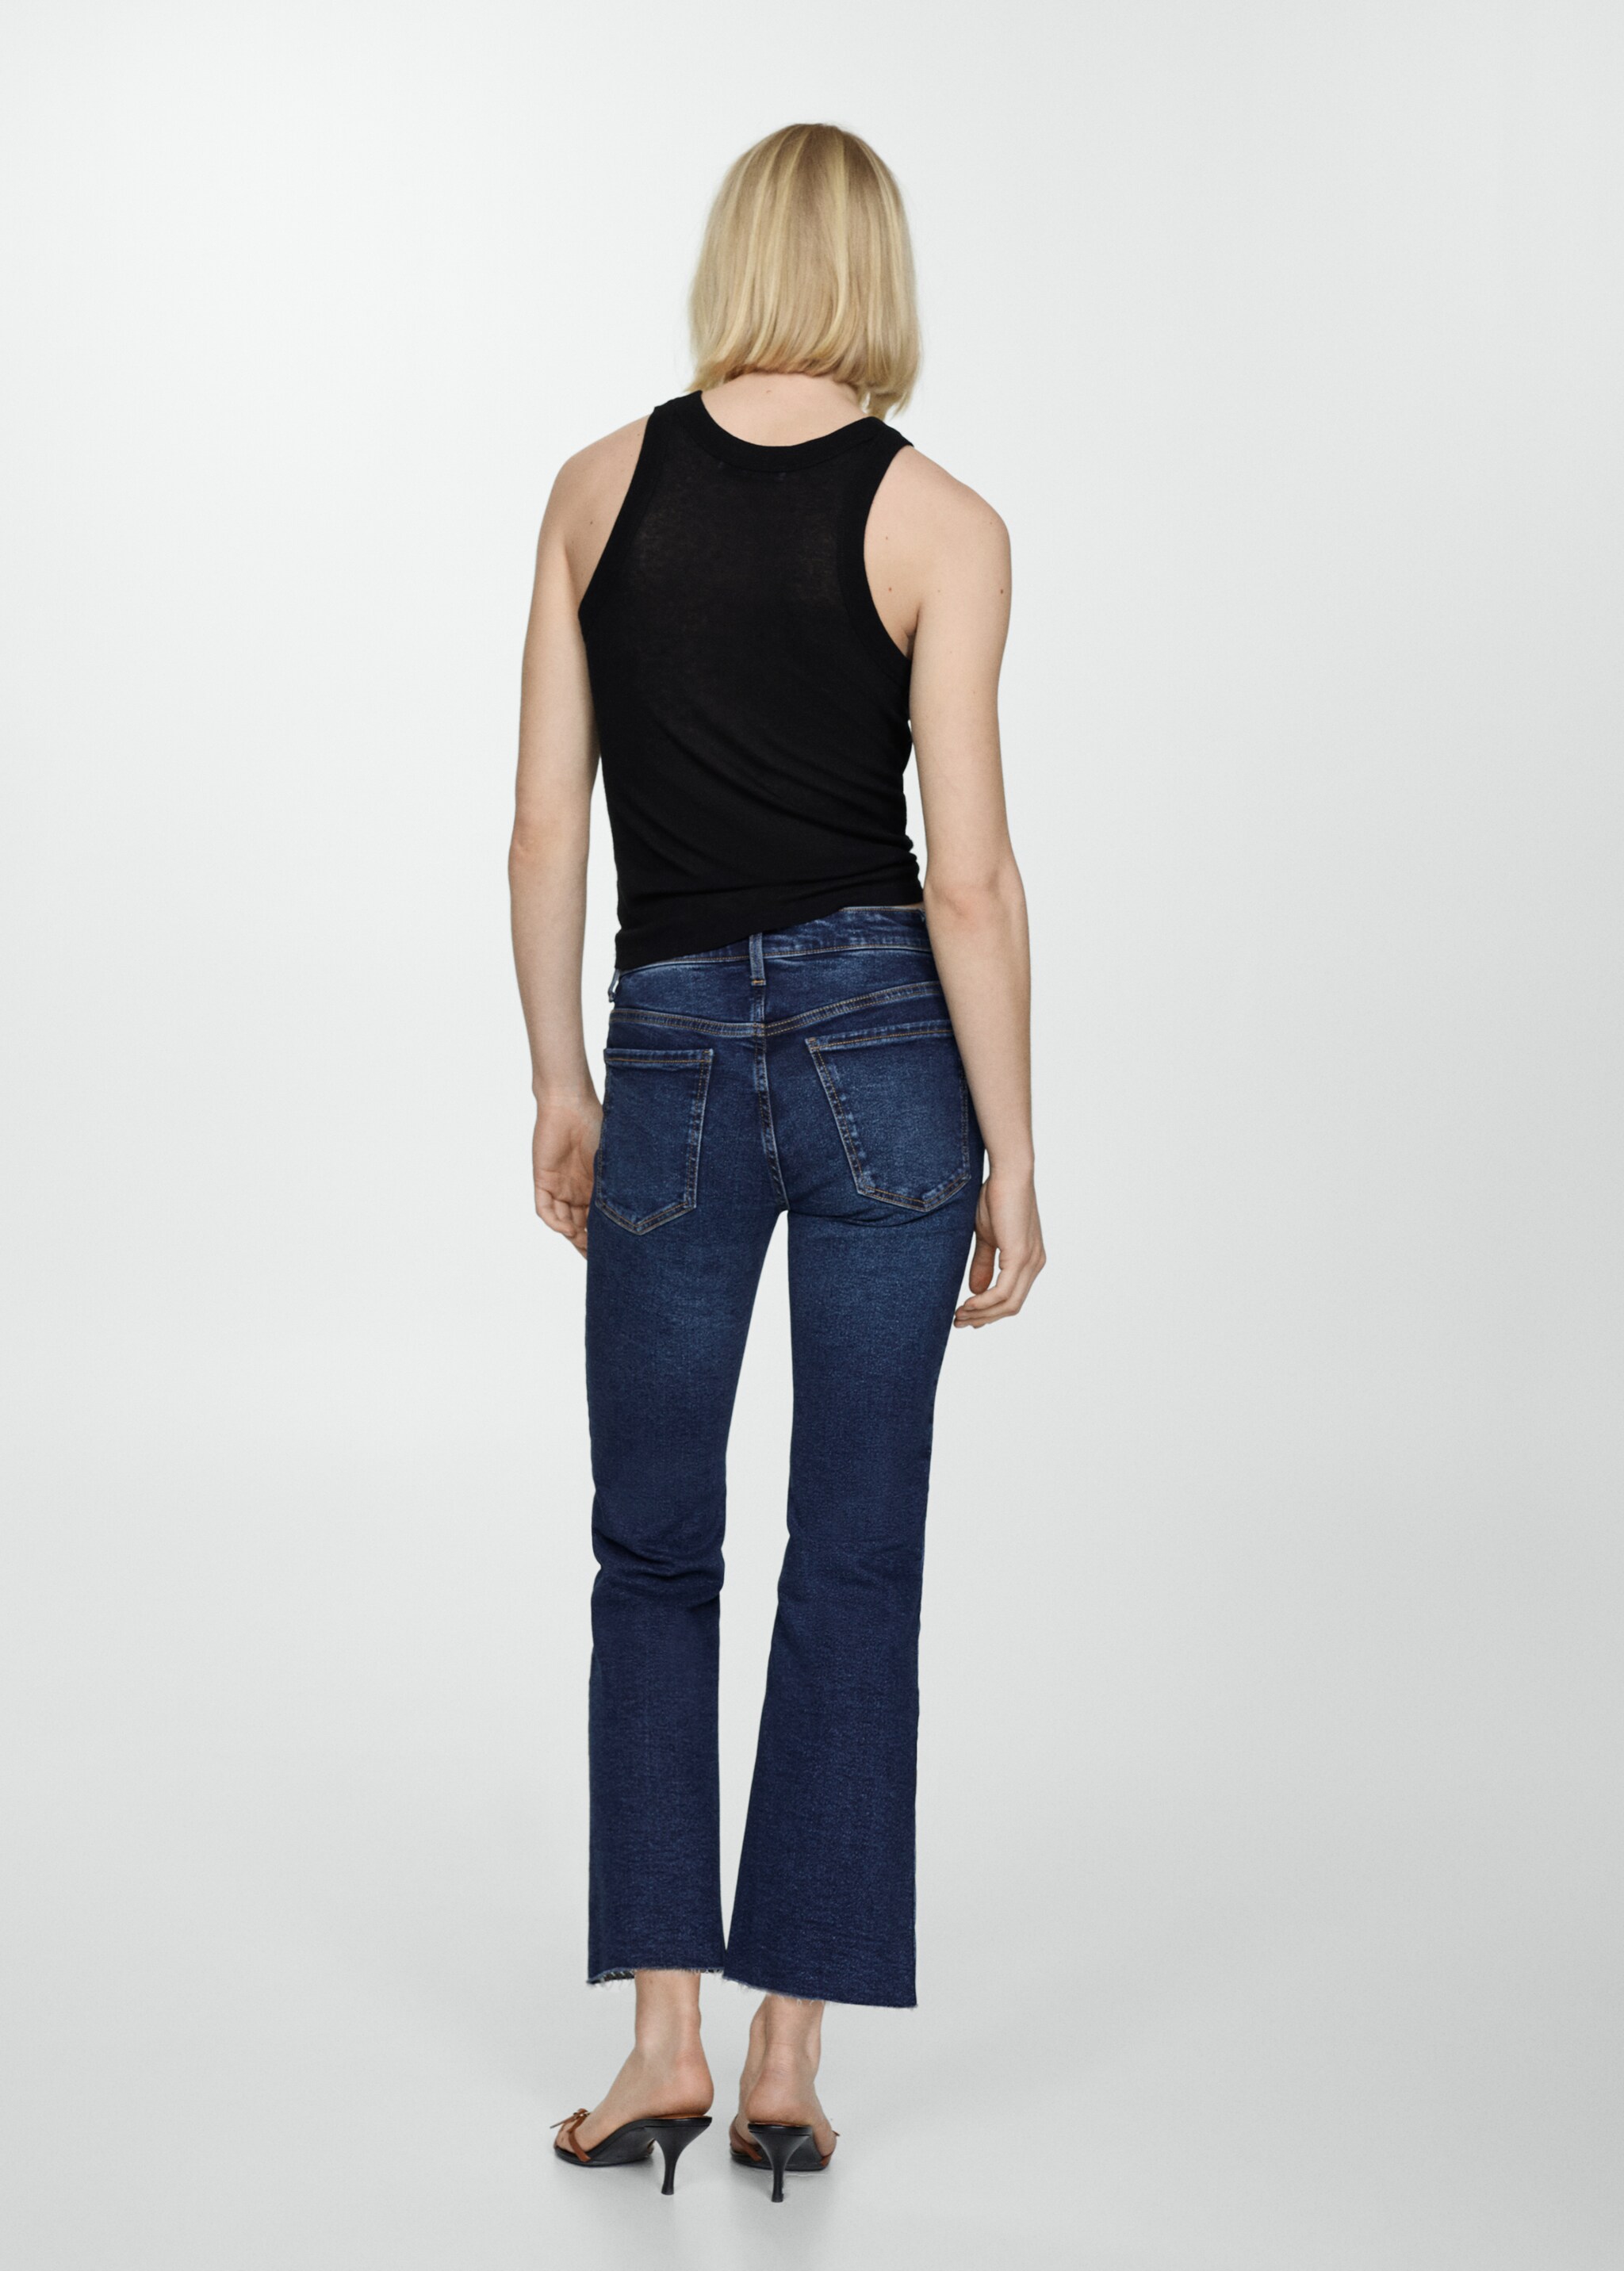 Jeans Sienna flare crop - Reverso del artículo